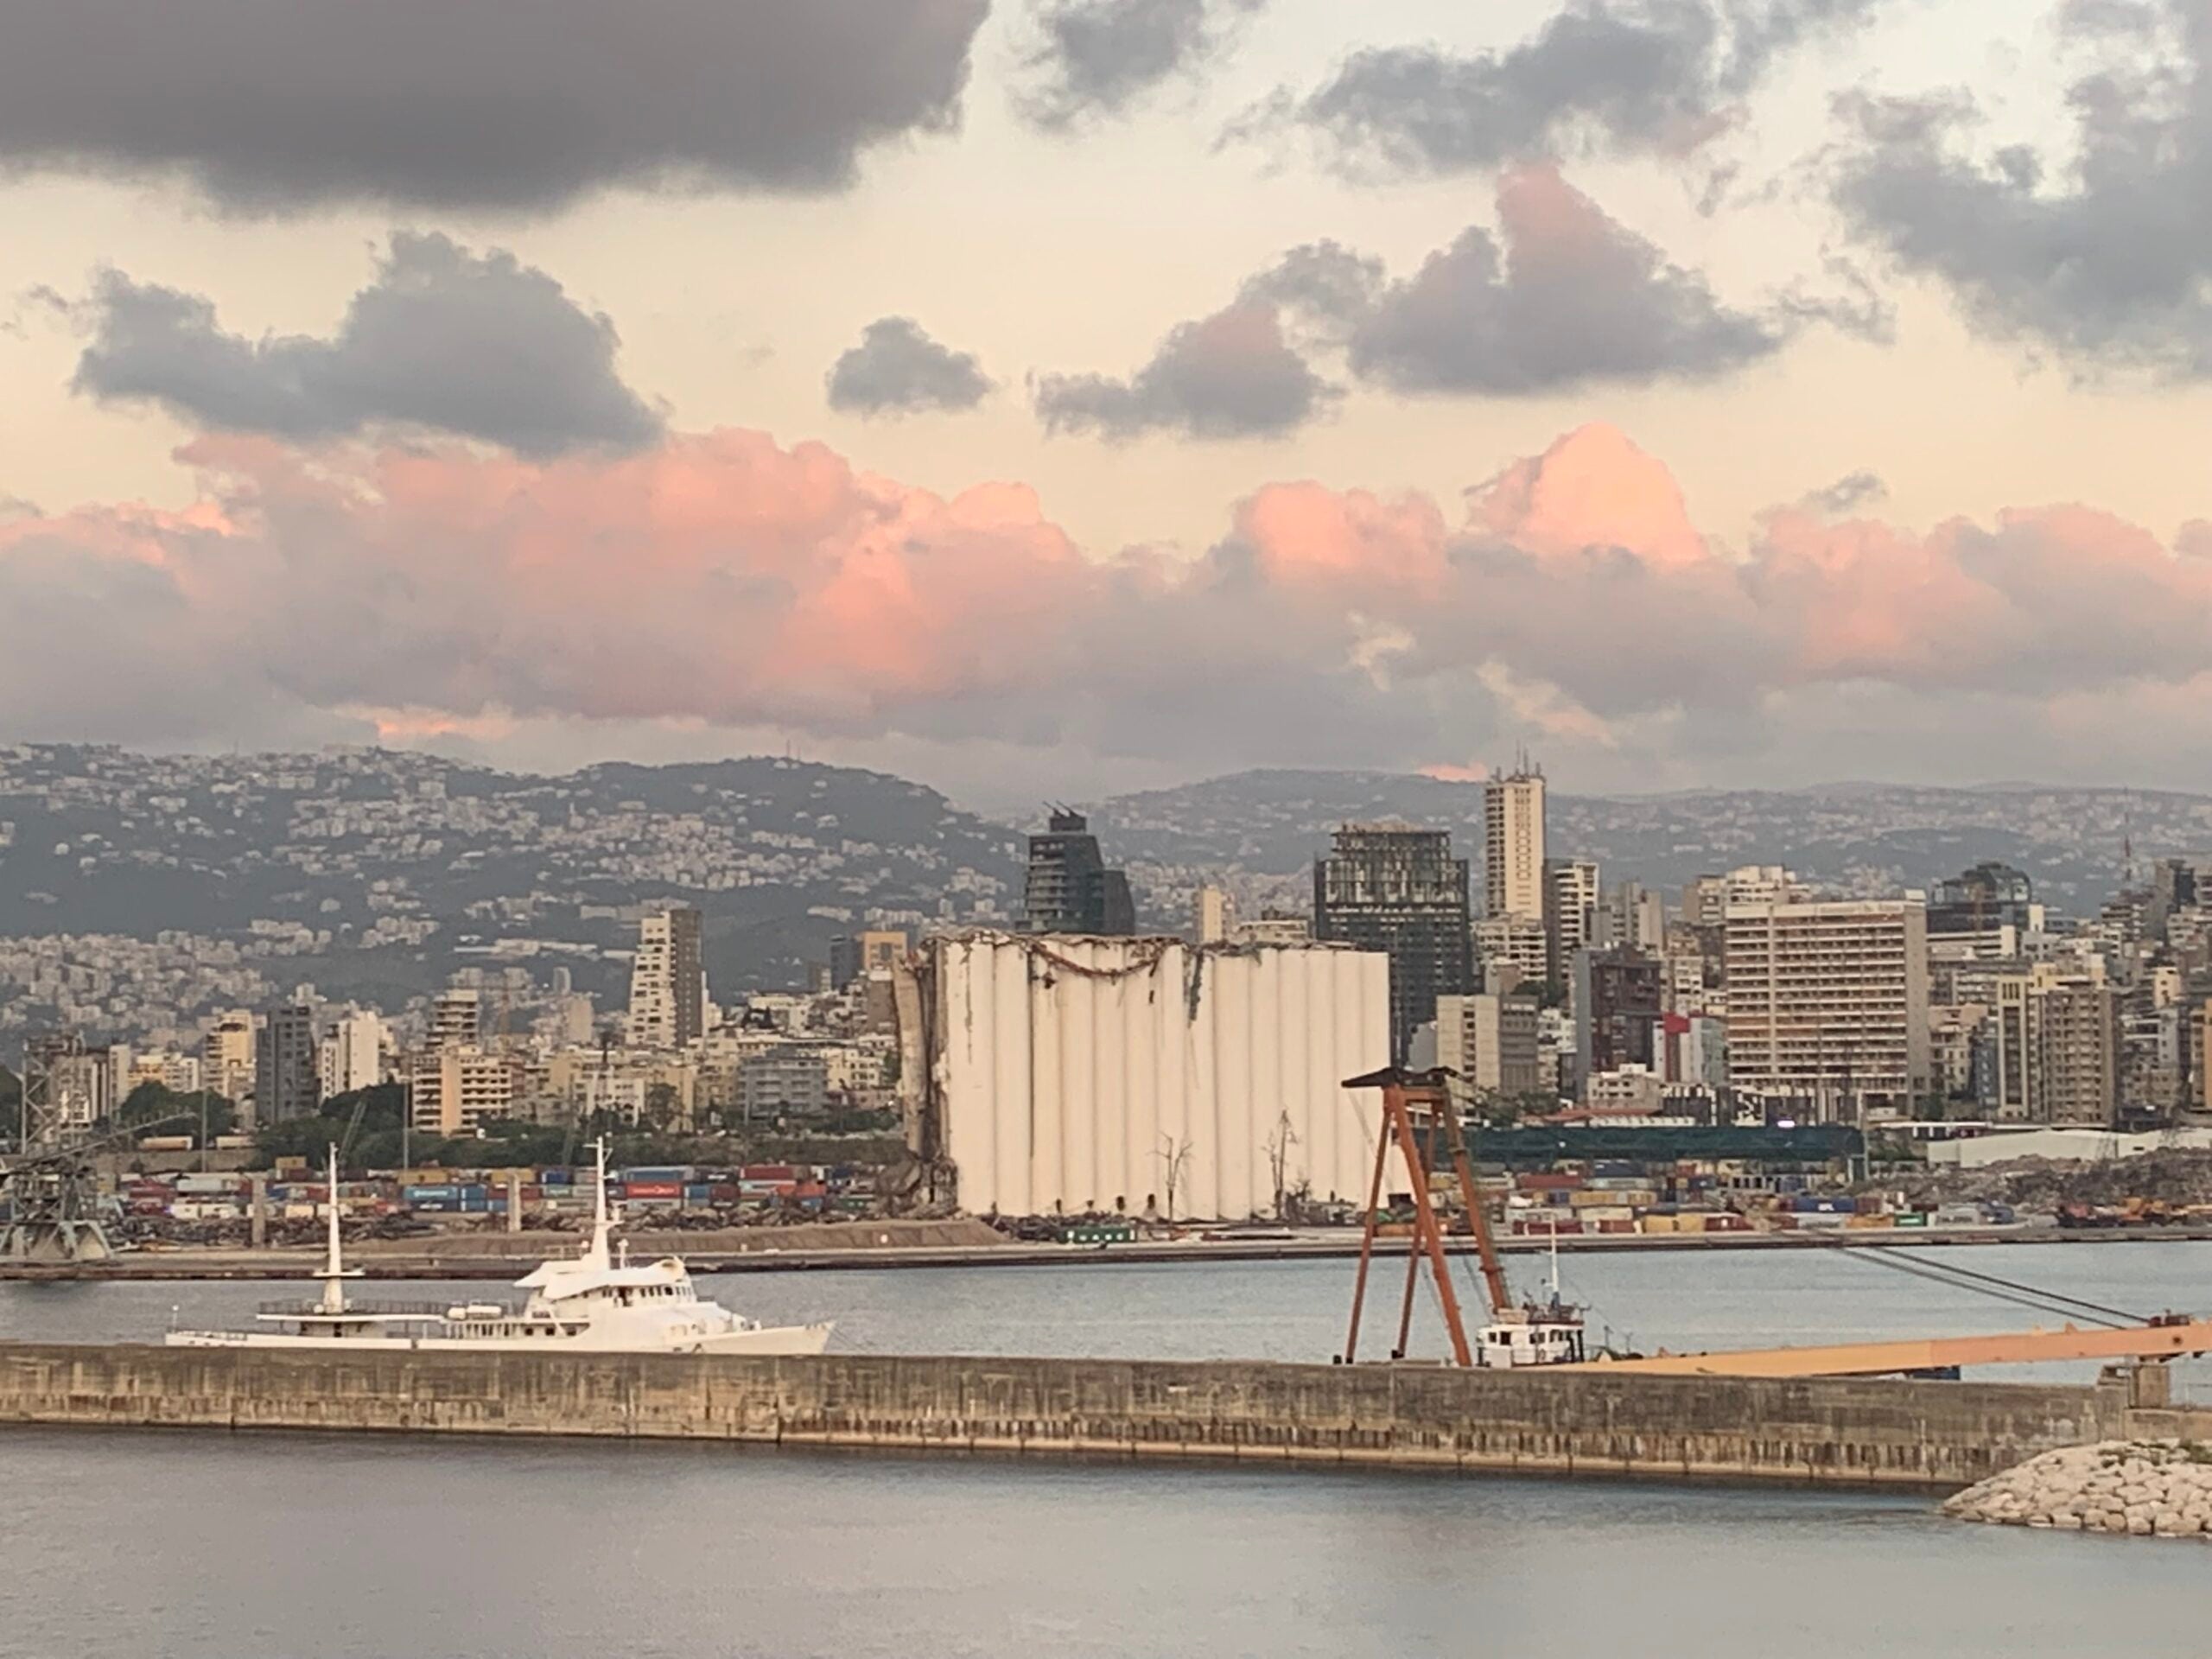 Landscape of Beirut's port